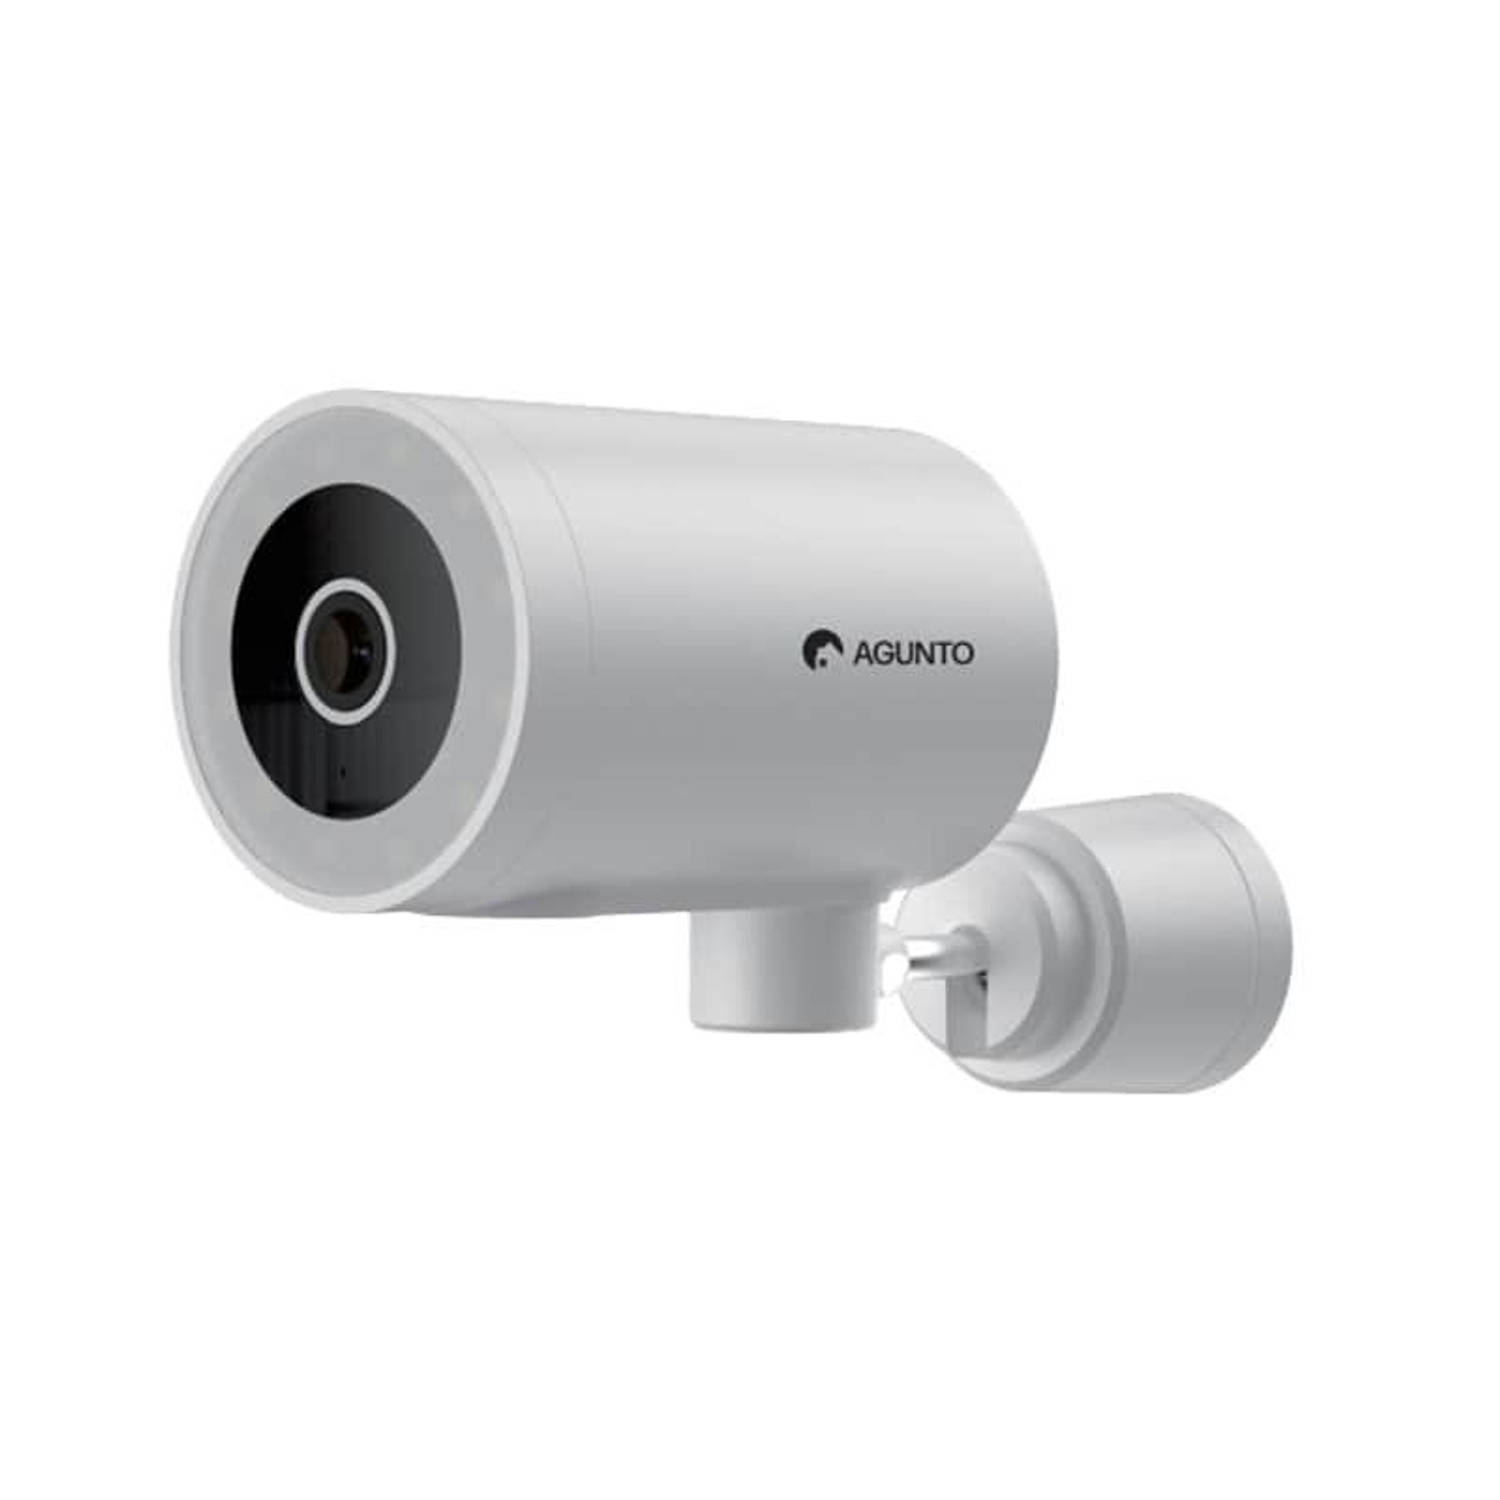 Agunto AGU-OC1 Beveiligingscamera - Bewakingscamera voor buiten - Nachtzicht in kleur - Buitencamera - Draaibaar - WiFi